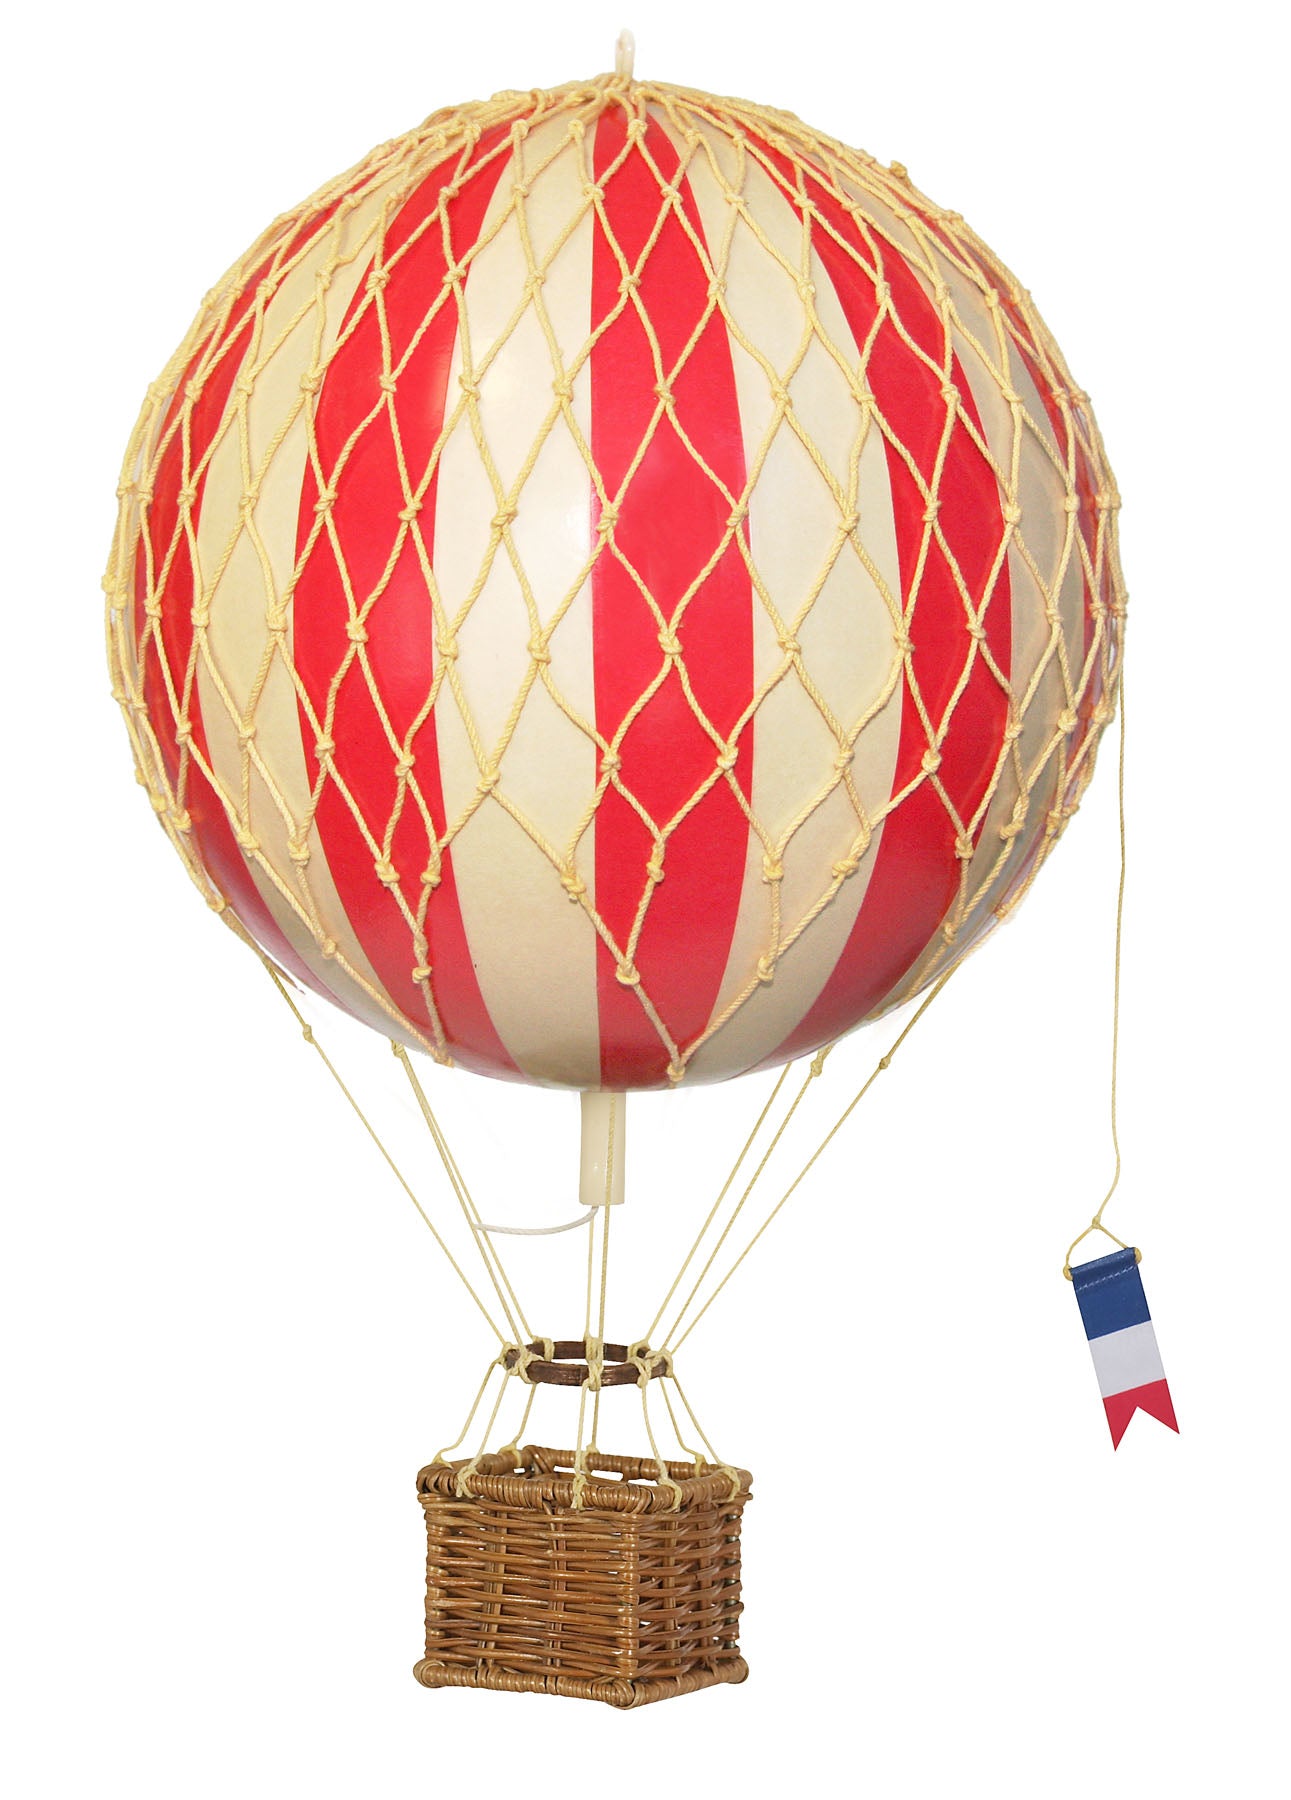 Купить шар с корзиной для полетов. Воздушный шар. Воздушный шар с корзиной. Воздушный шар игрушка. Корзинка для воздушного шара.